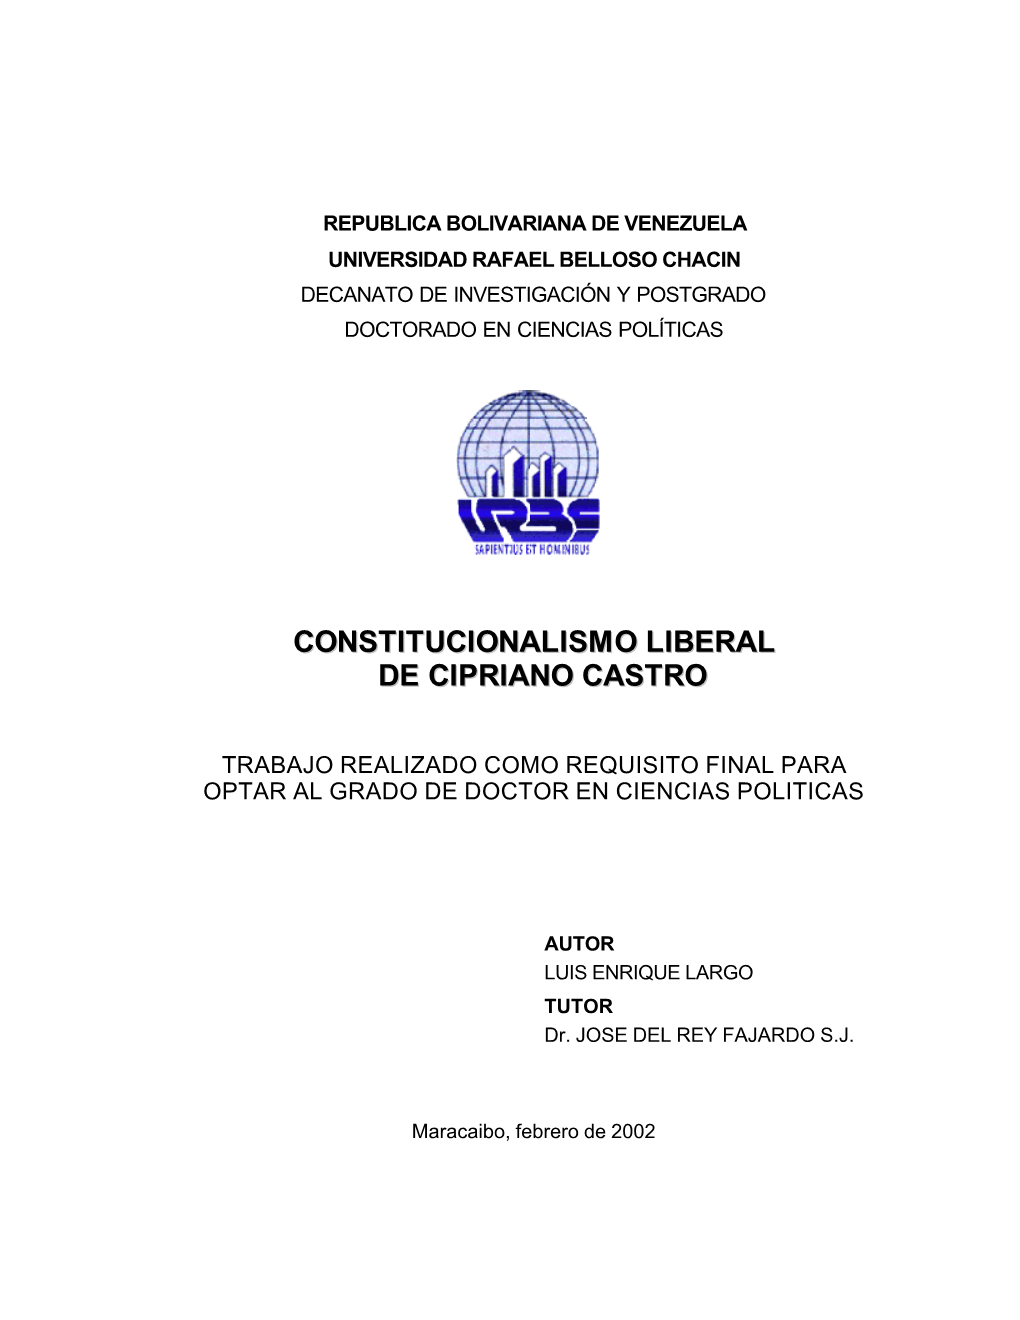 Constitucionalismo Liberal De Cipriano Castro